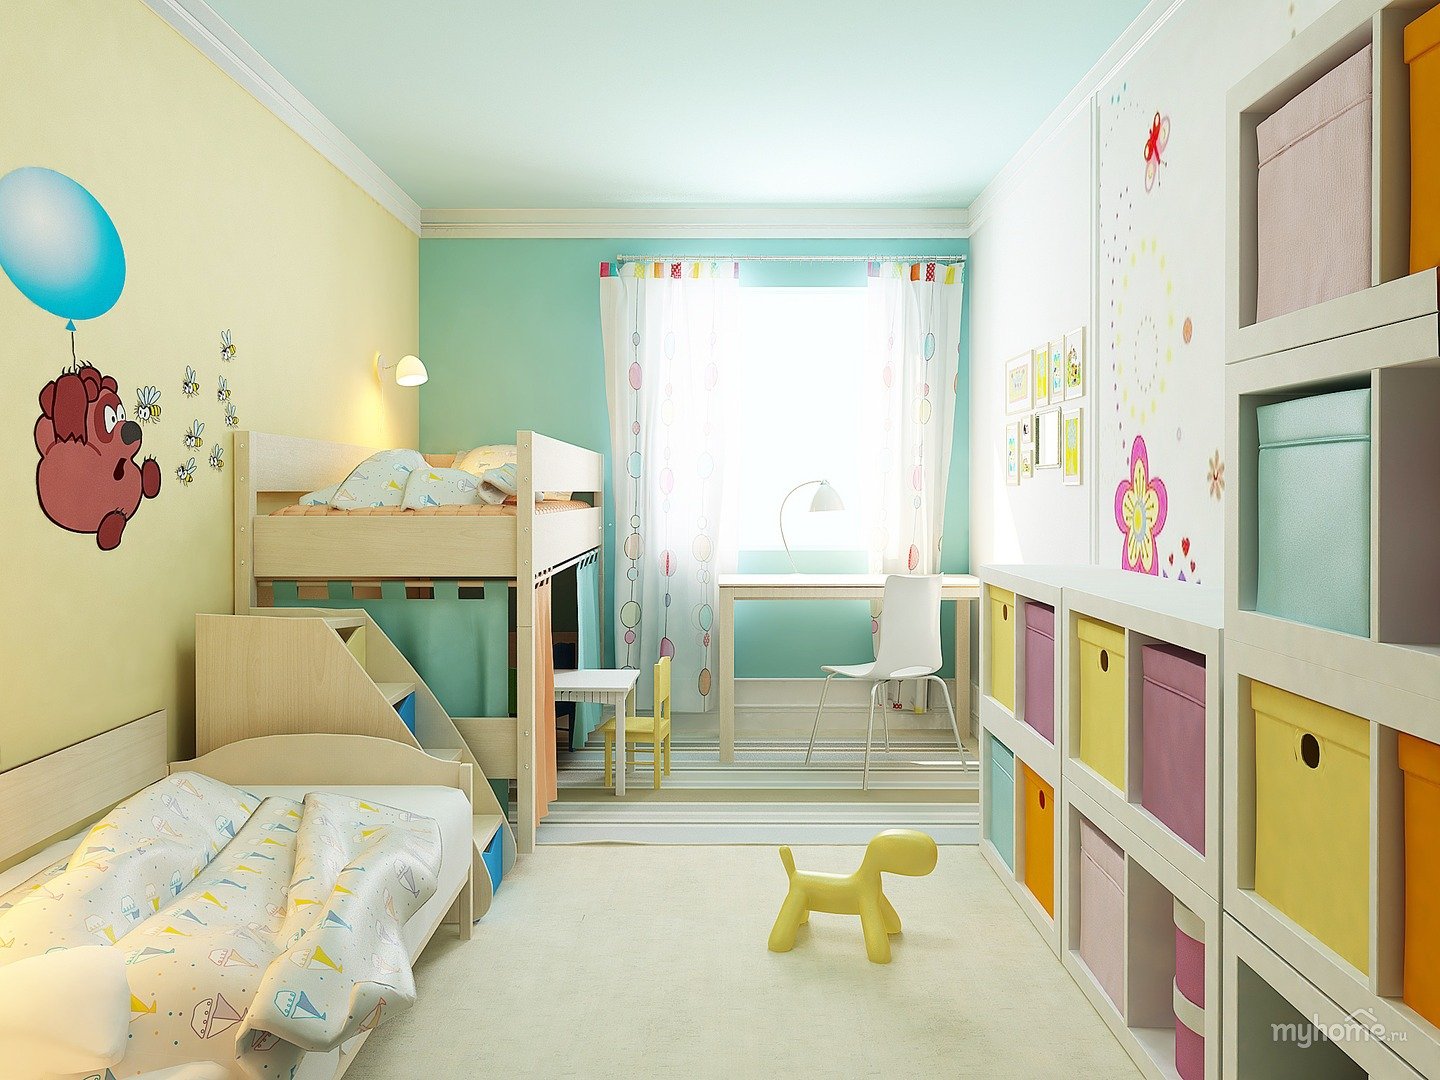 Комната мамы и мальчика. Детская комната для Дочки. Планировка комнаты для двоих детей. Комната мамы и ребенка. Детская для двух дочек.